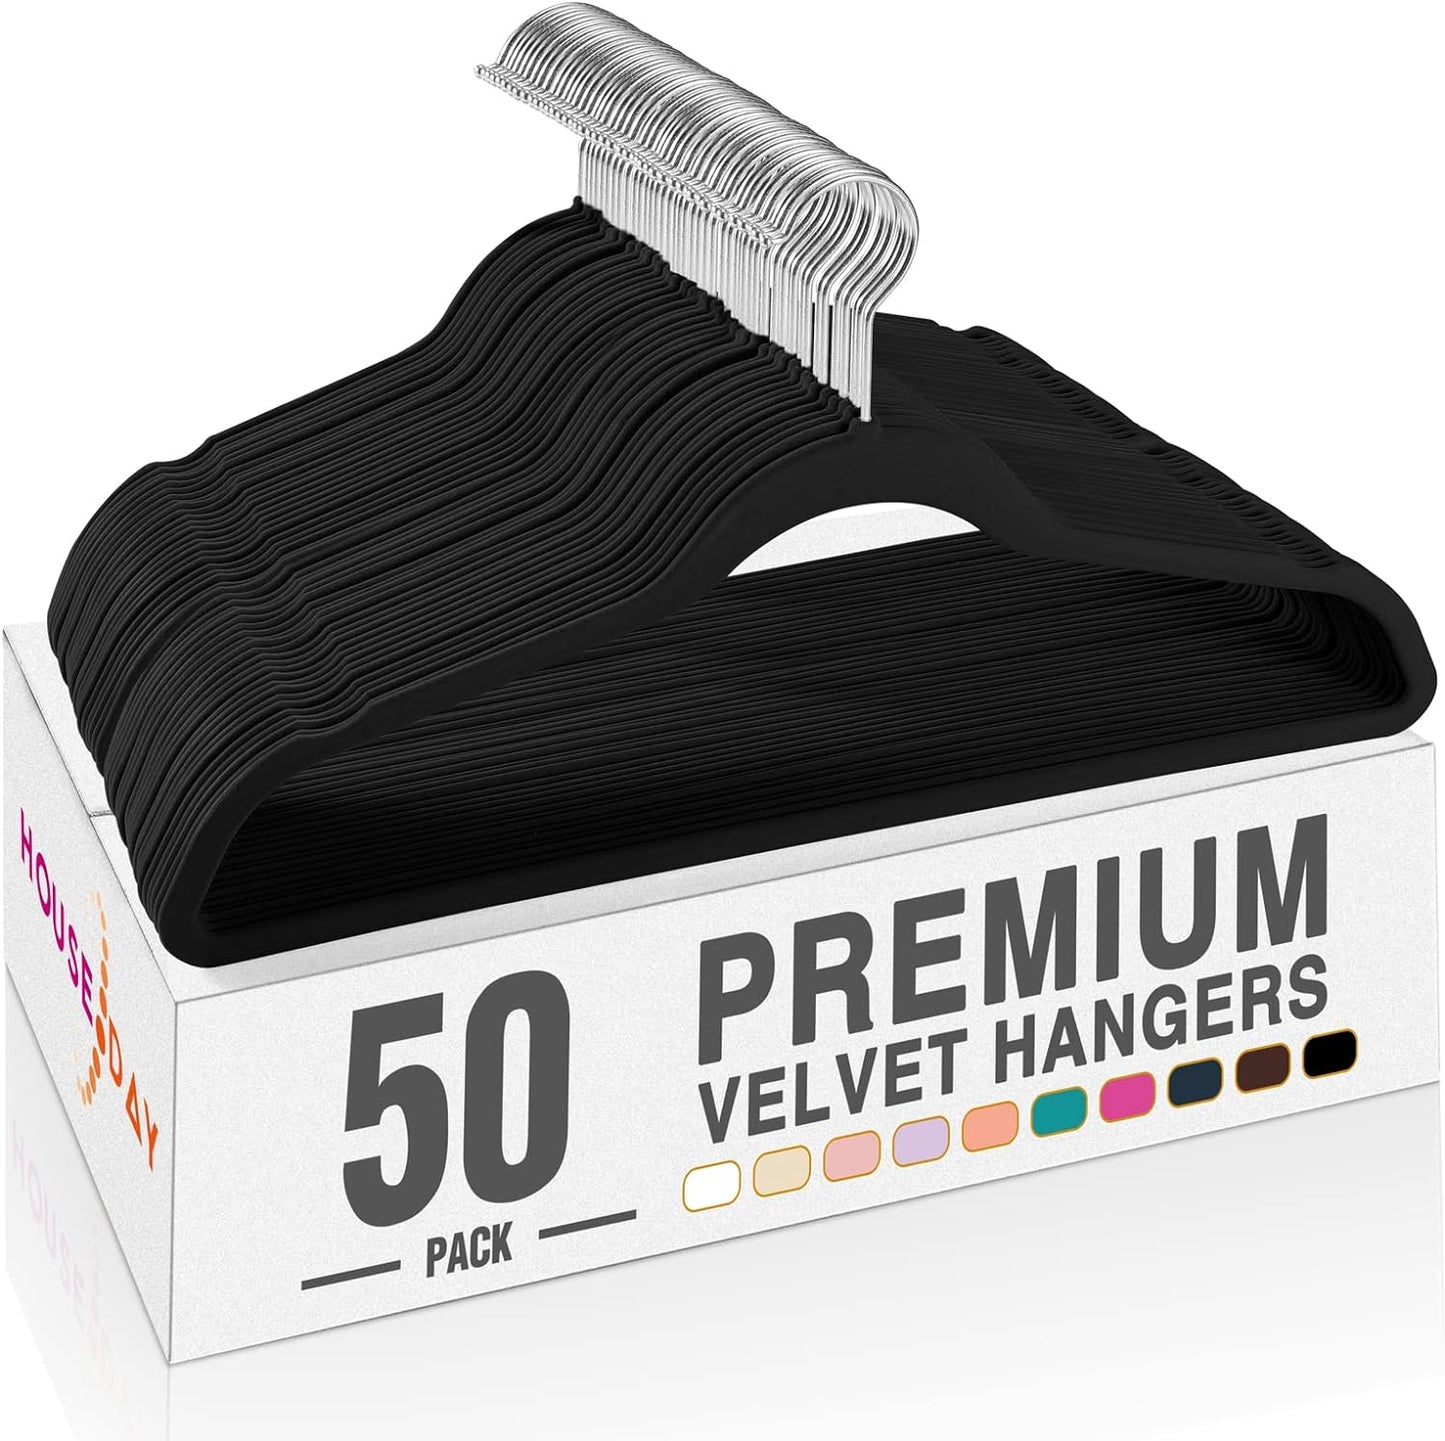 HOUSE DAY Black Velvet Hangers 50 Pack